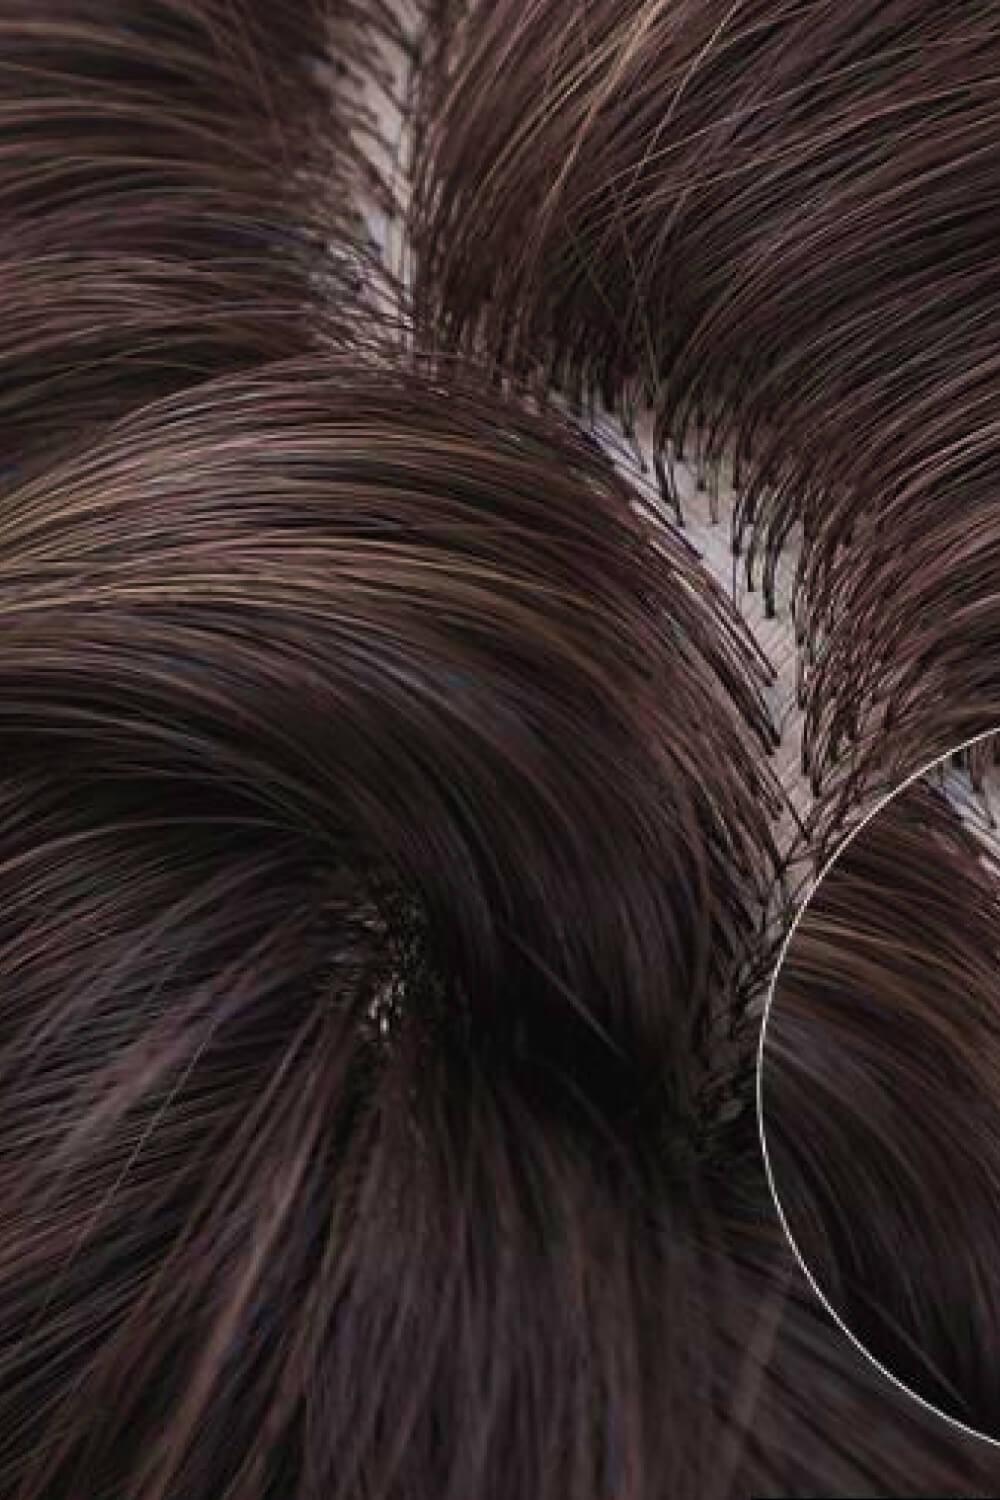 Bobo Wave Synthetic Wigs 12'' - Trendha